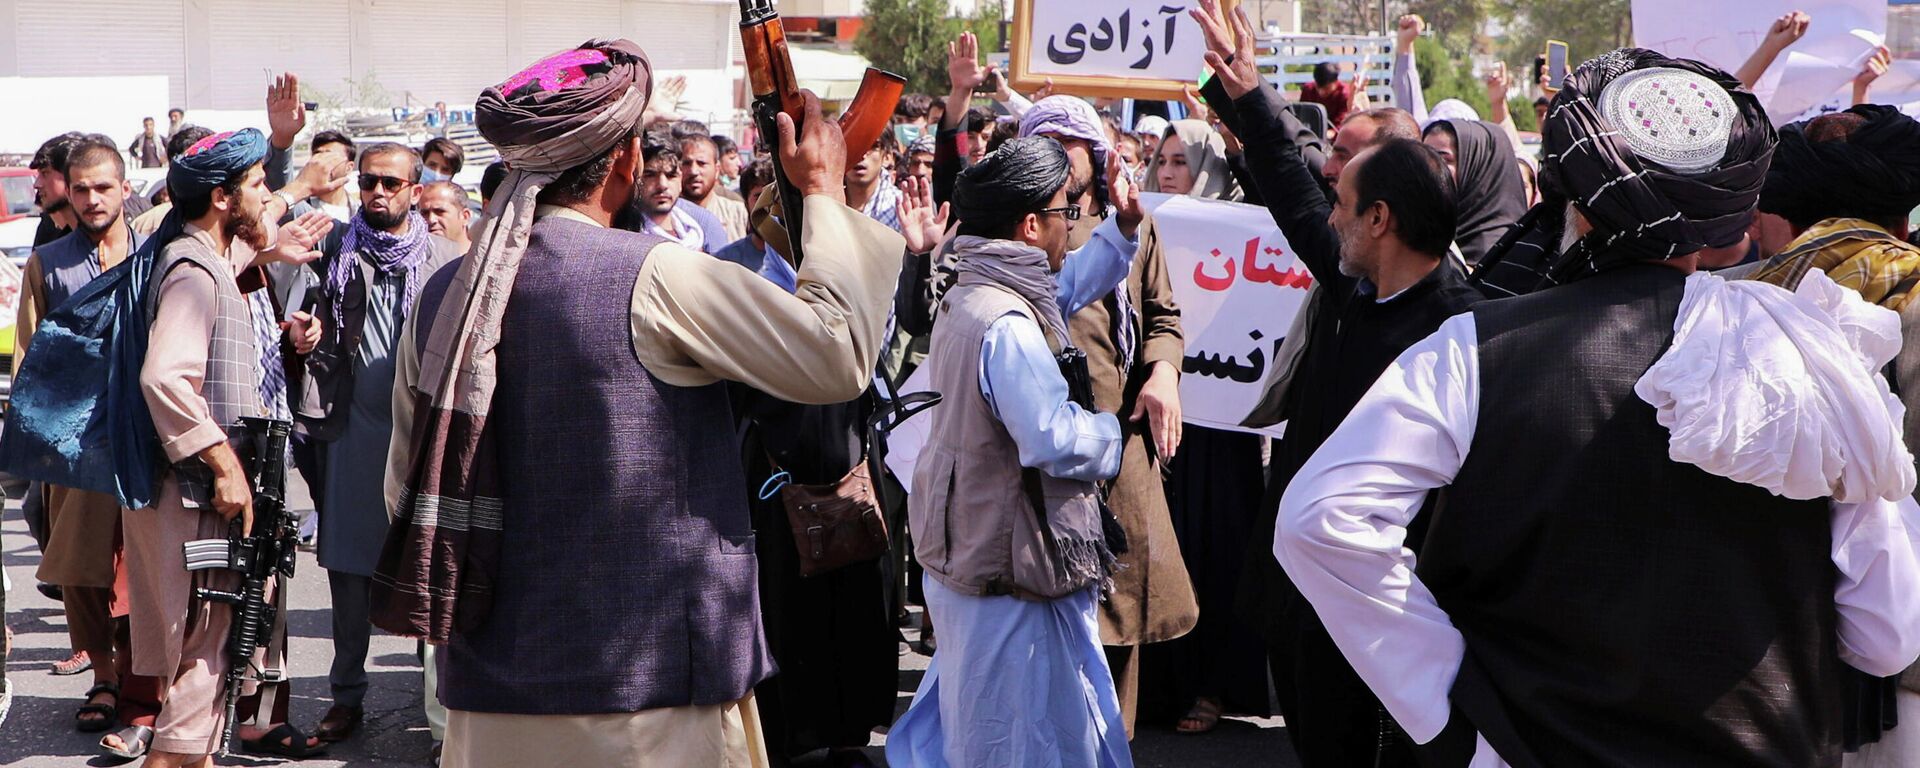 Protestas en Afganistán - Sputnik Mundo, 1920, 23.09.2021